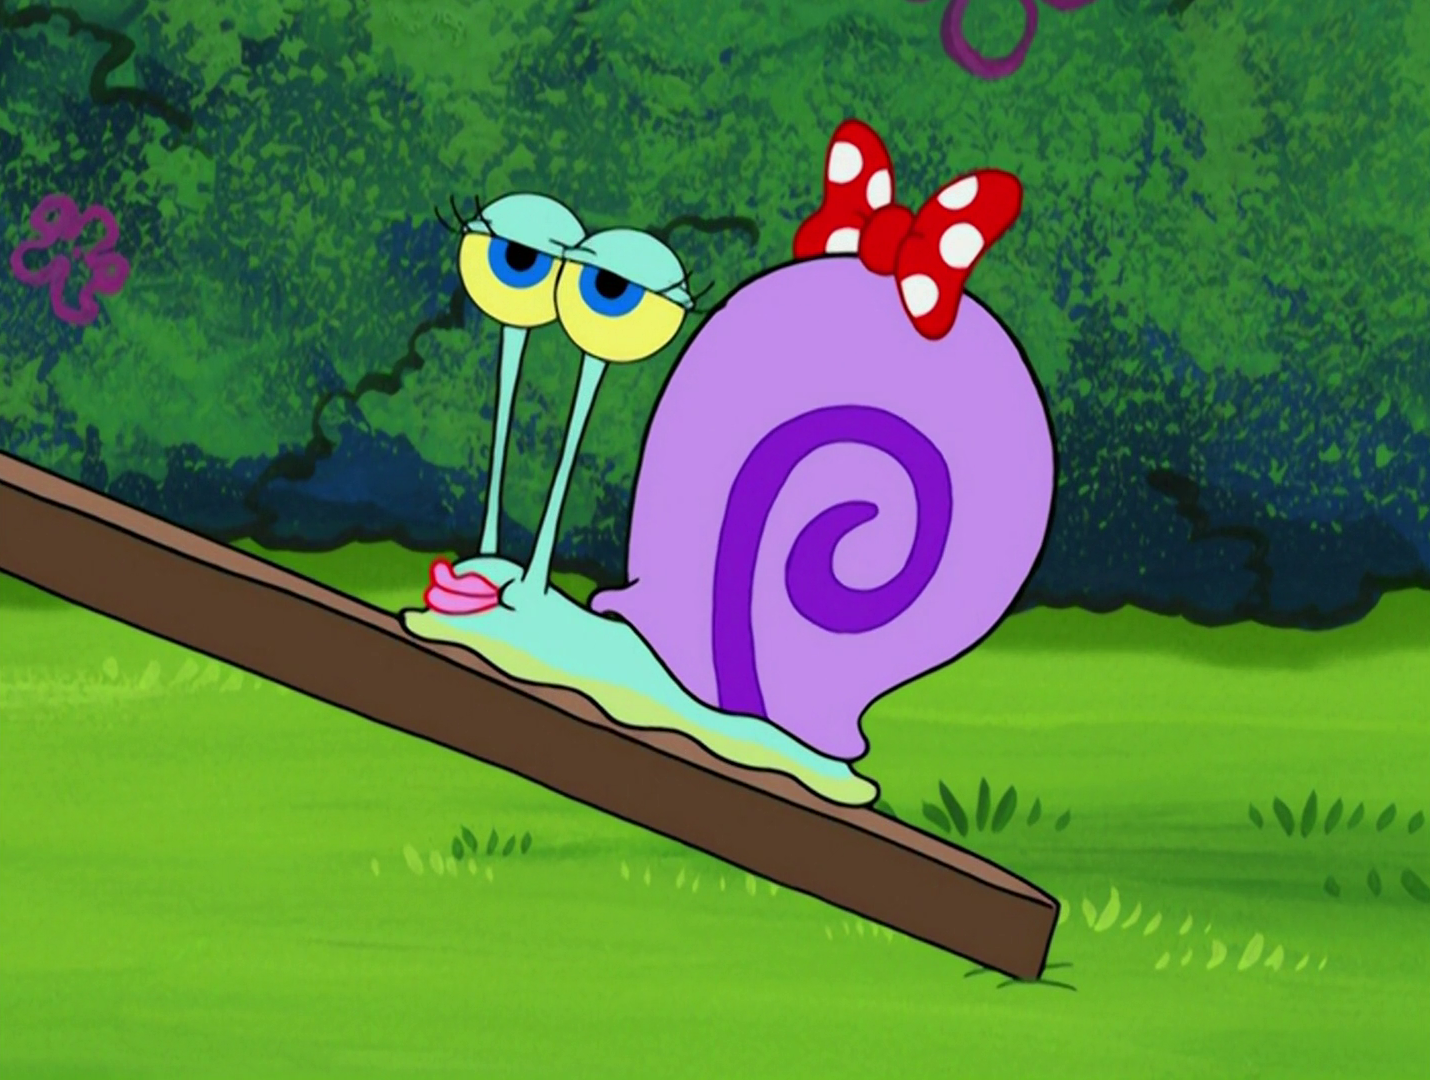 Mary the Snail | Encyclopedia SpongeBobia | Fandom